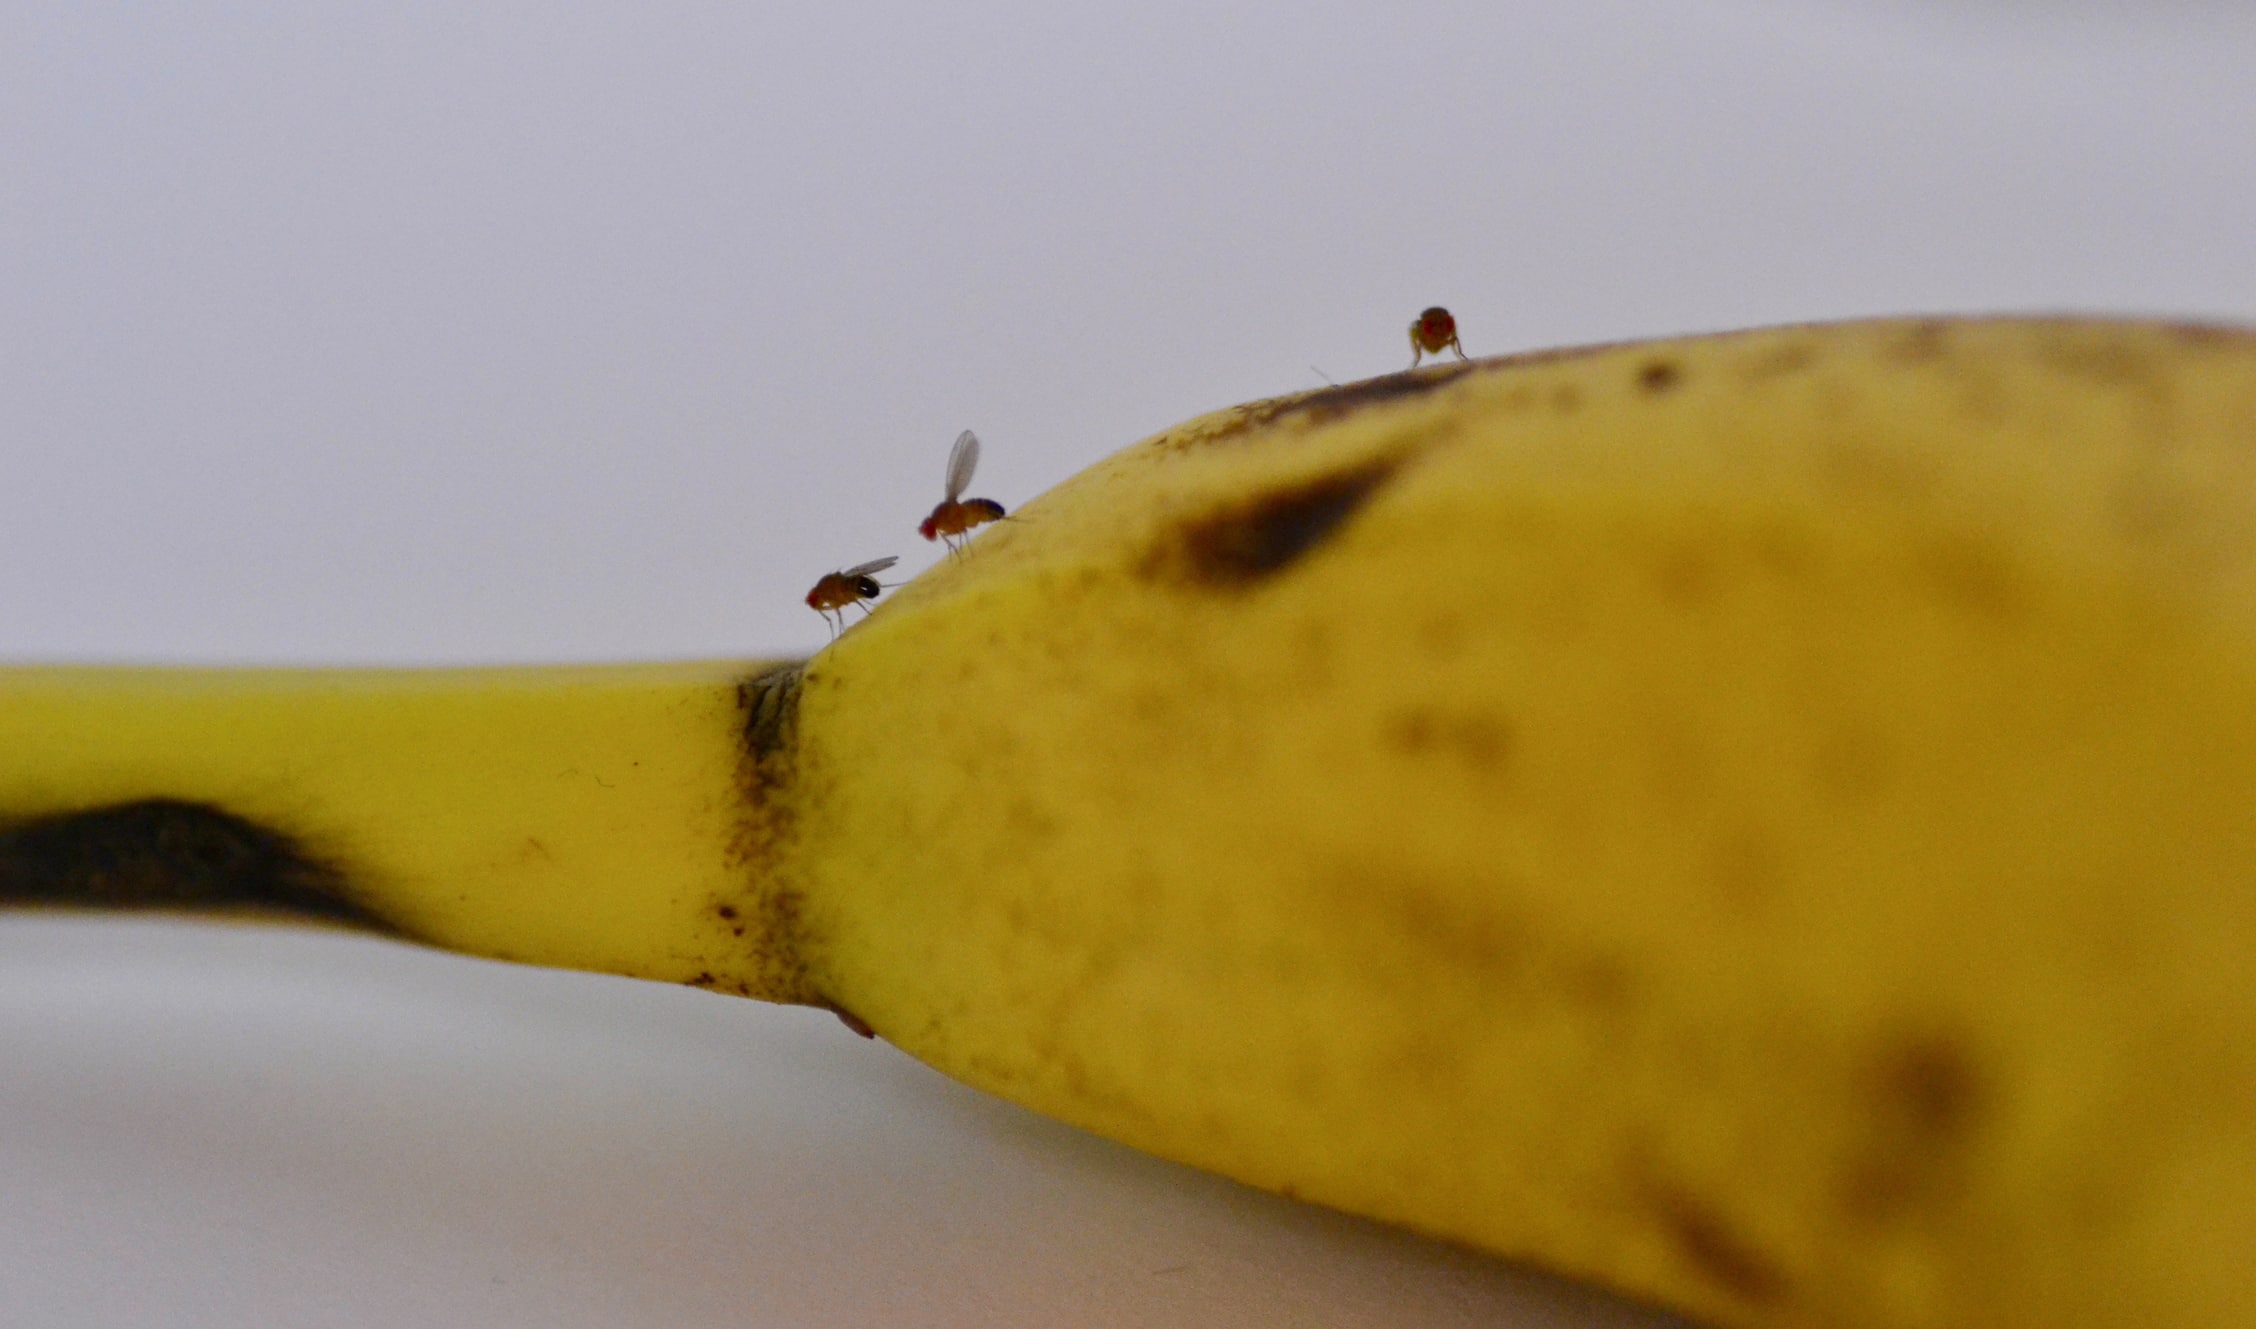 https://www.modernpest.com/uploads/Fruit-flies-on-a-banana.jpg